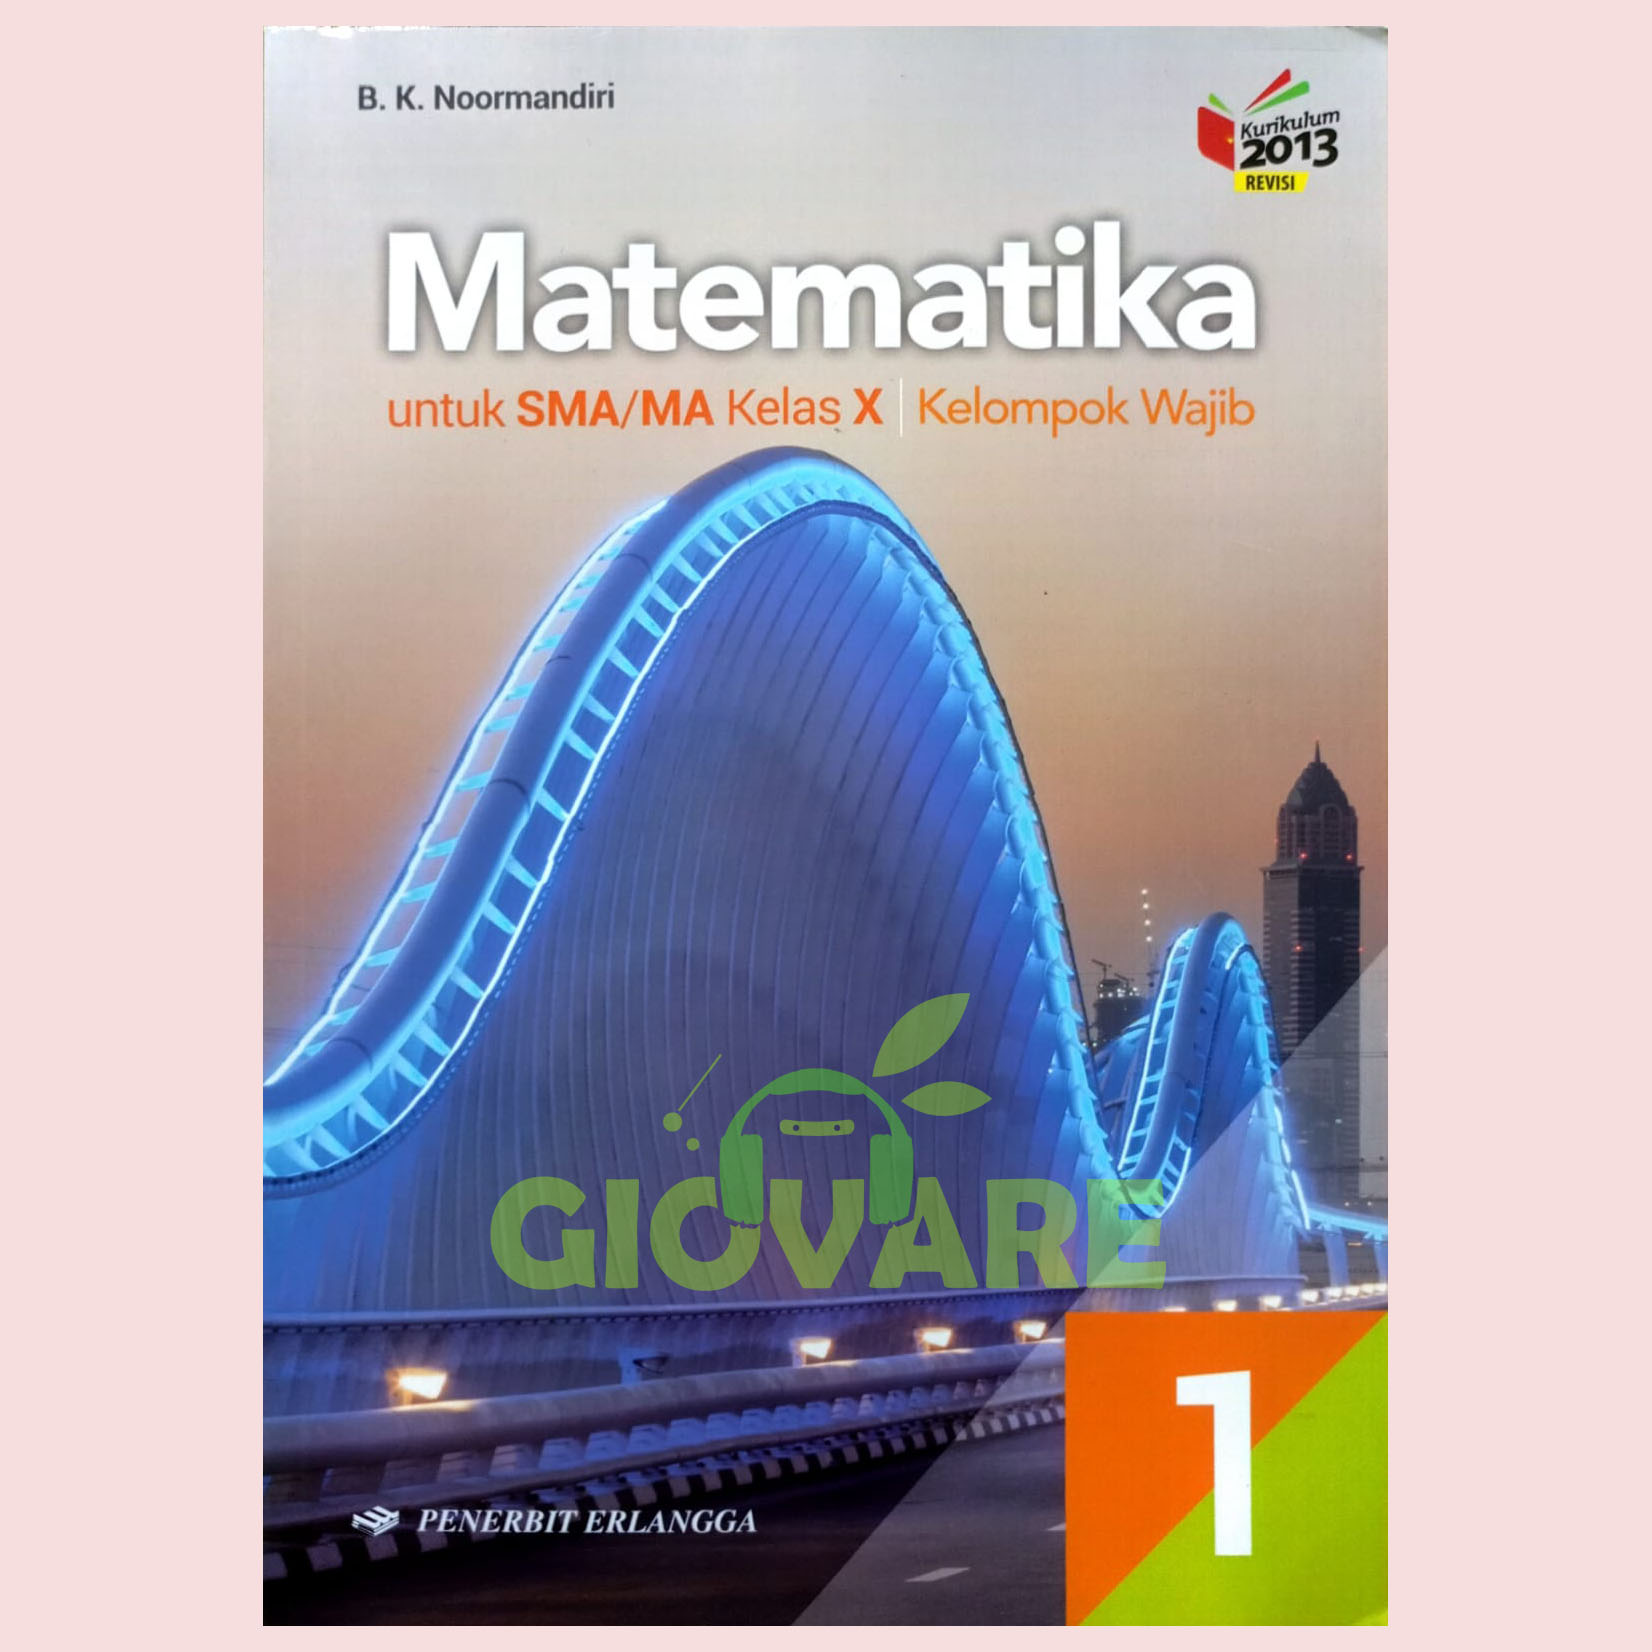 Harga Buku Matematika Sma Terbaru Mei 2022 Biggo Indonesia